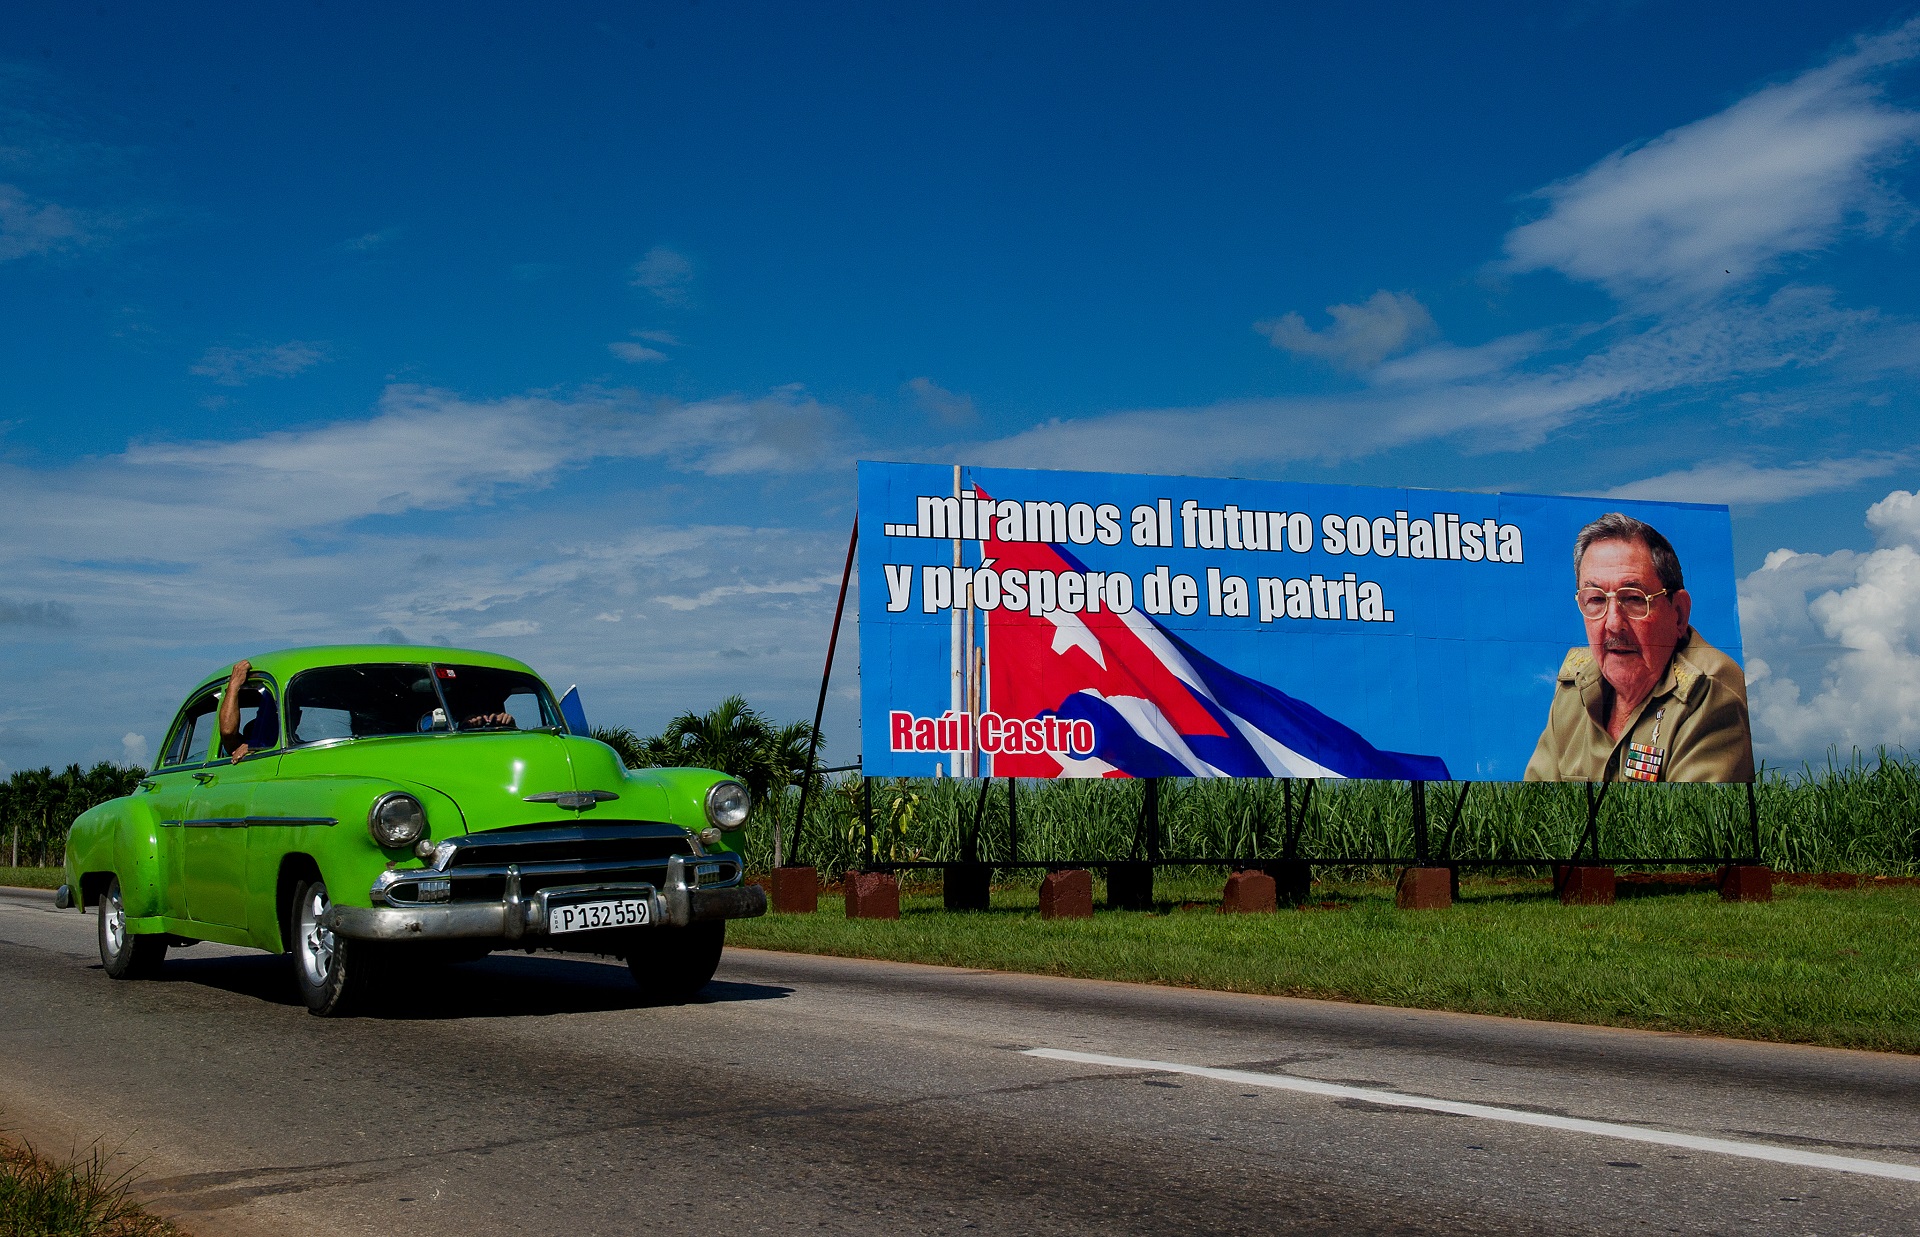 Ezt a fura hangot hallották az amerikai diplomaták Kubában, mielőtt agykárosodást szenvedtek